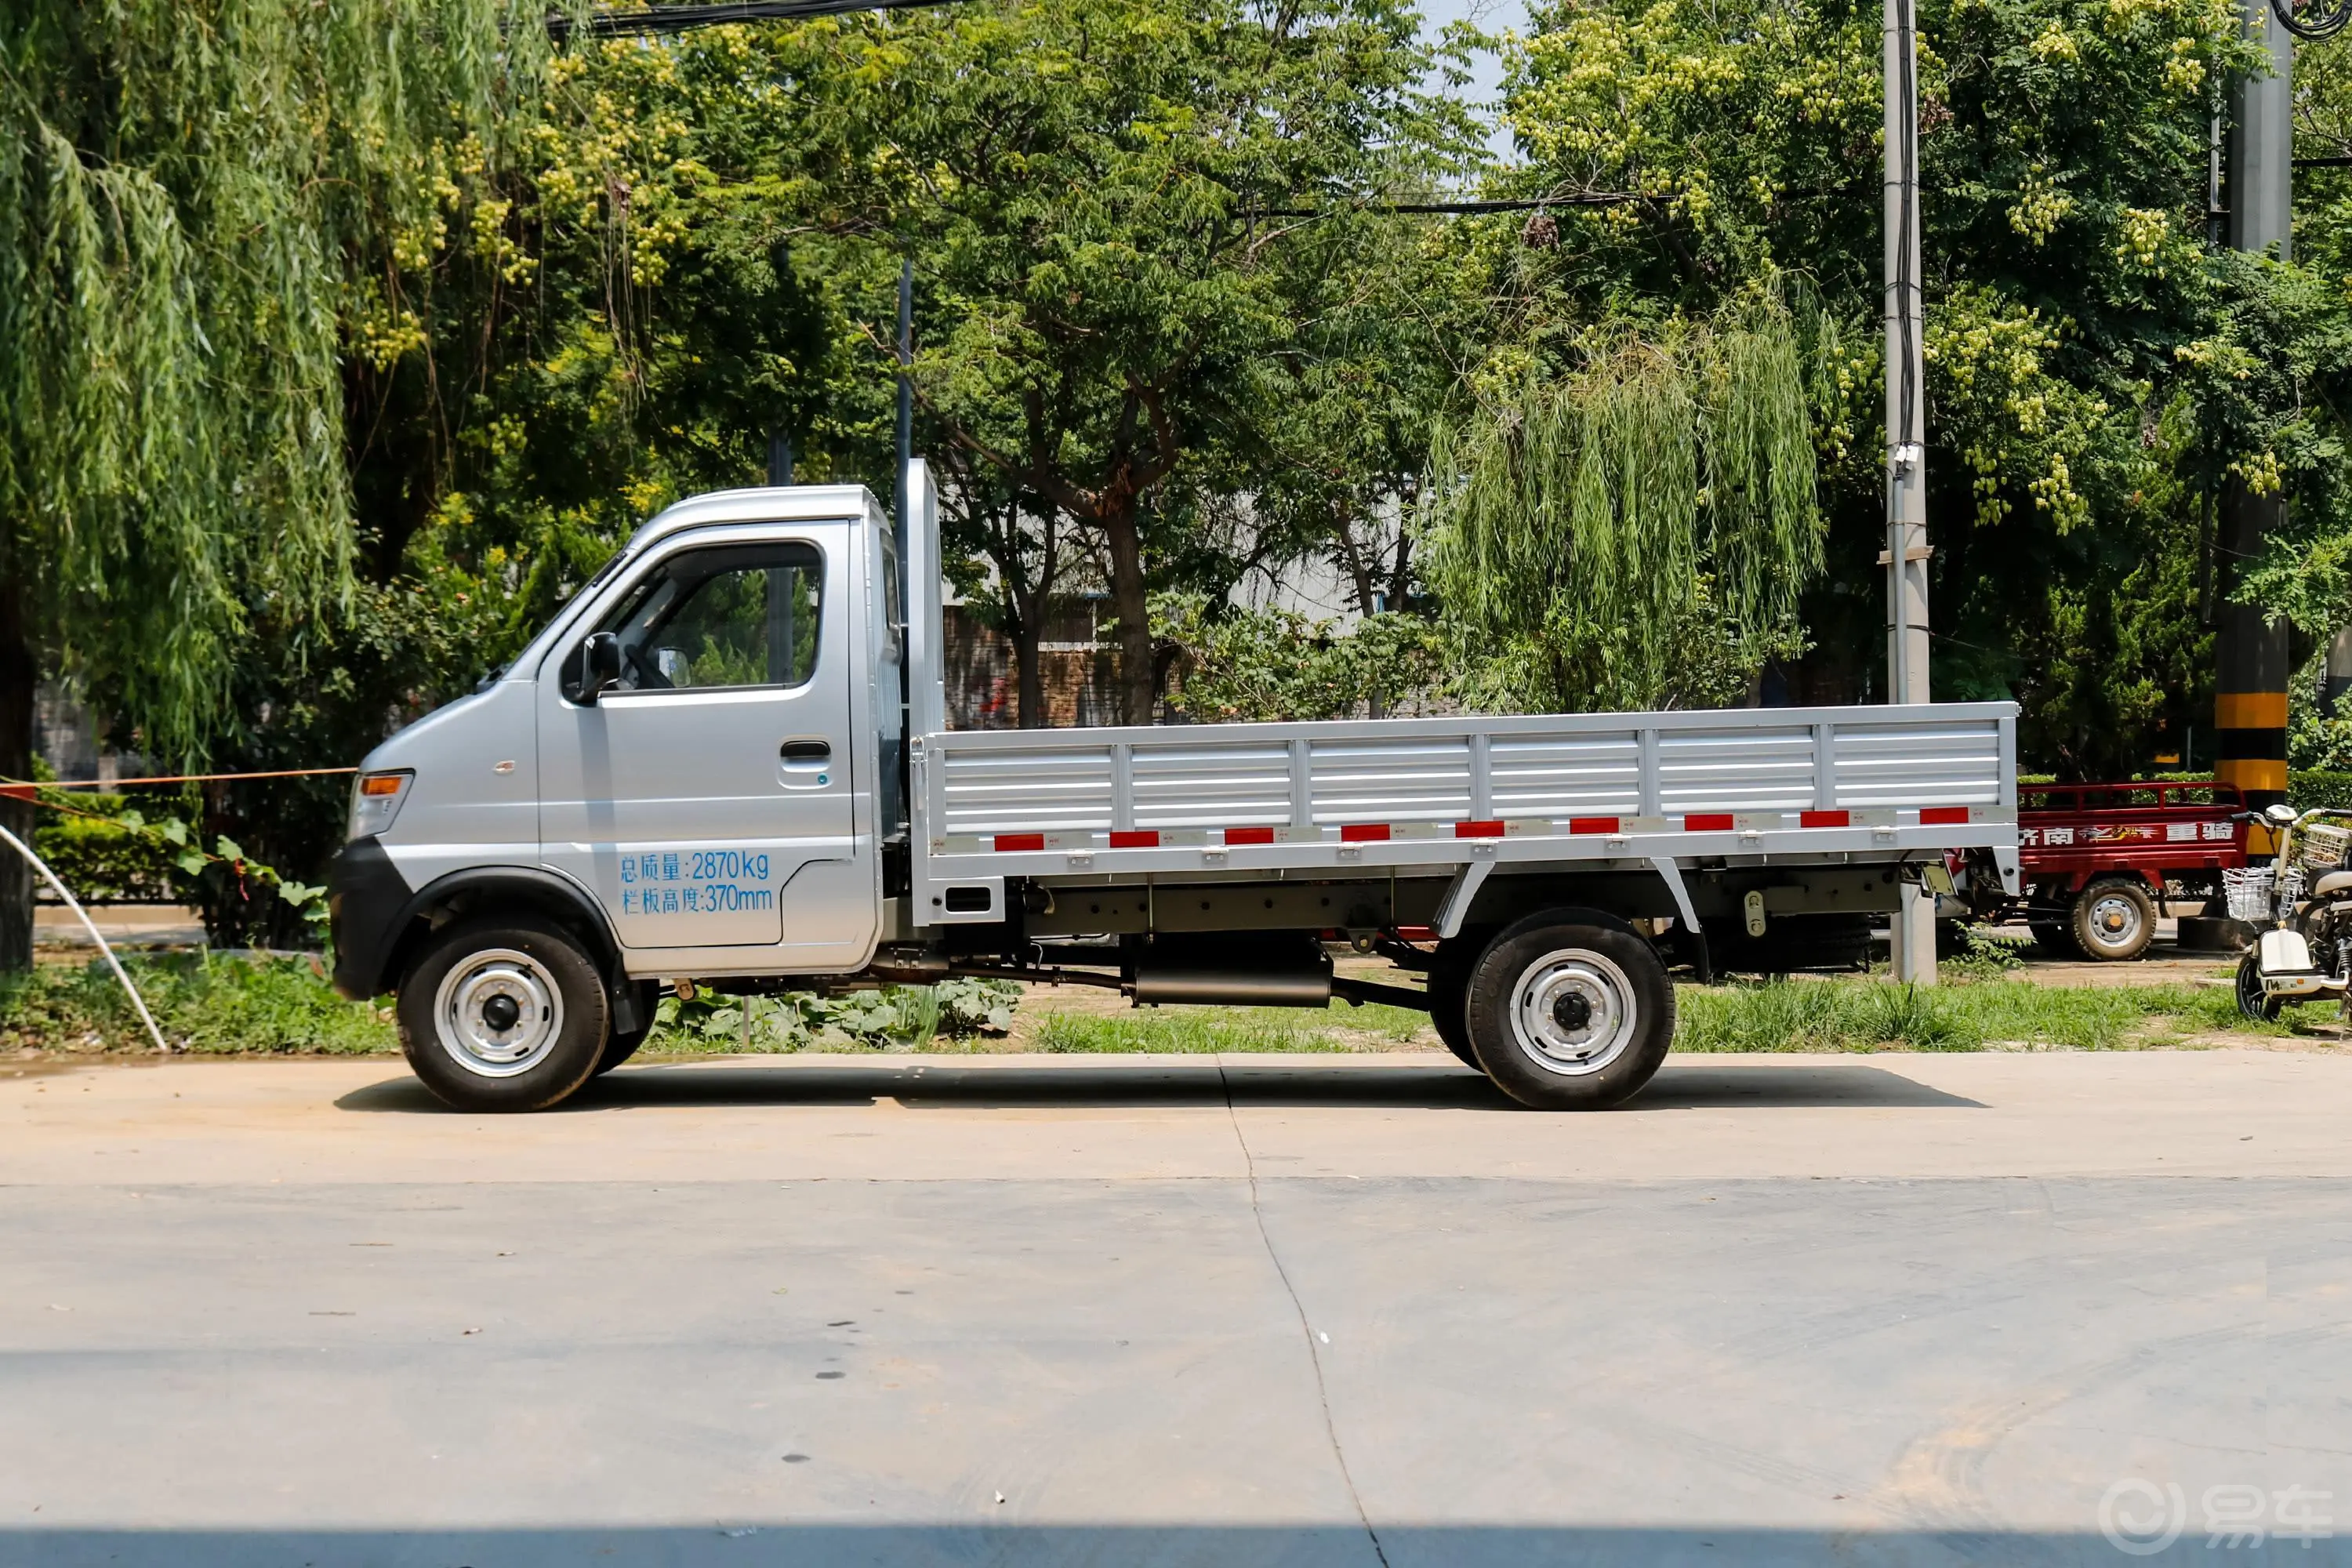 神骐T20T20L 载货车单排 1.5L 手动 舒适版 3.6米货箱正侧车头向左水平